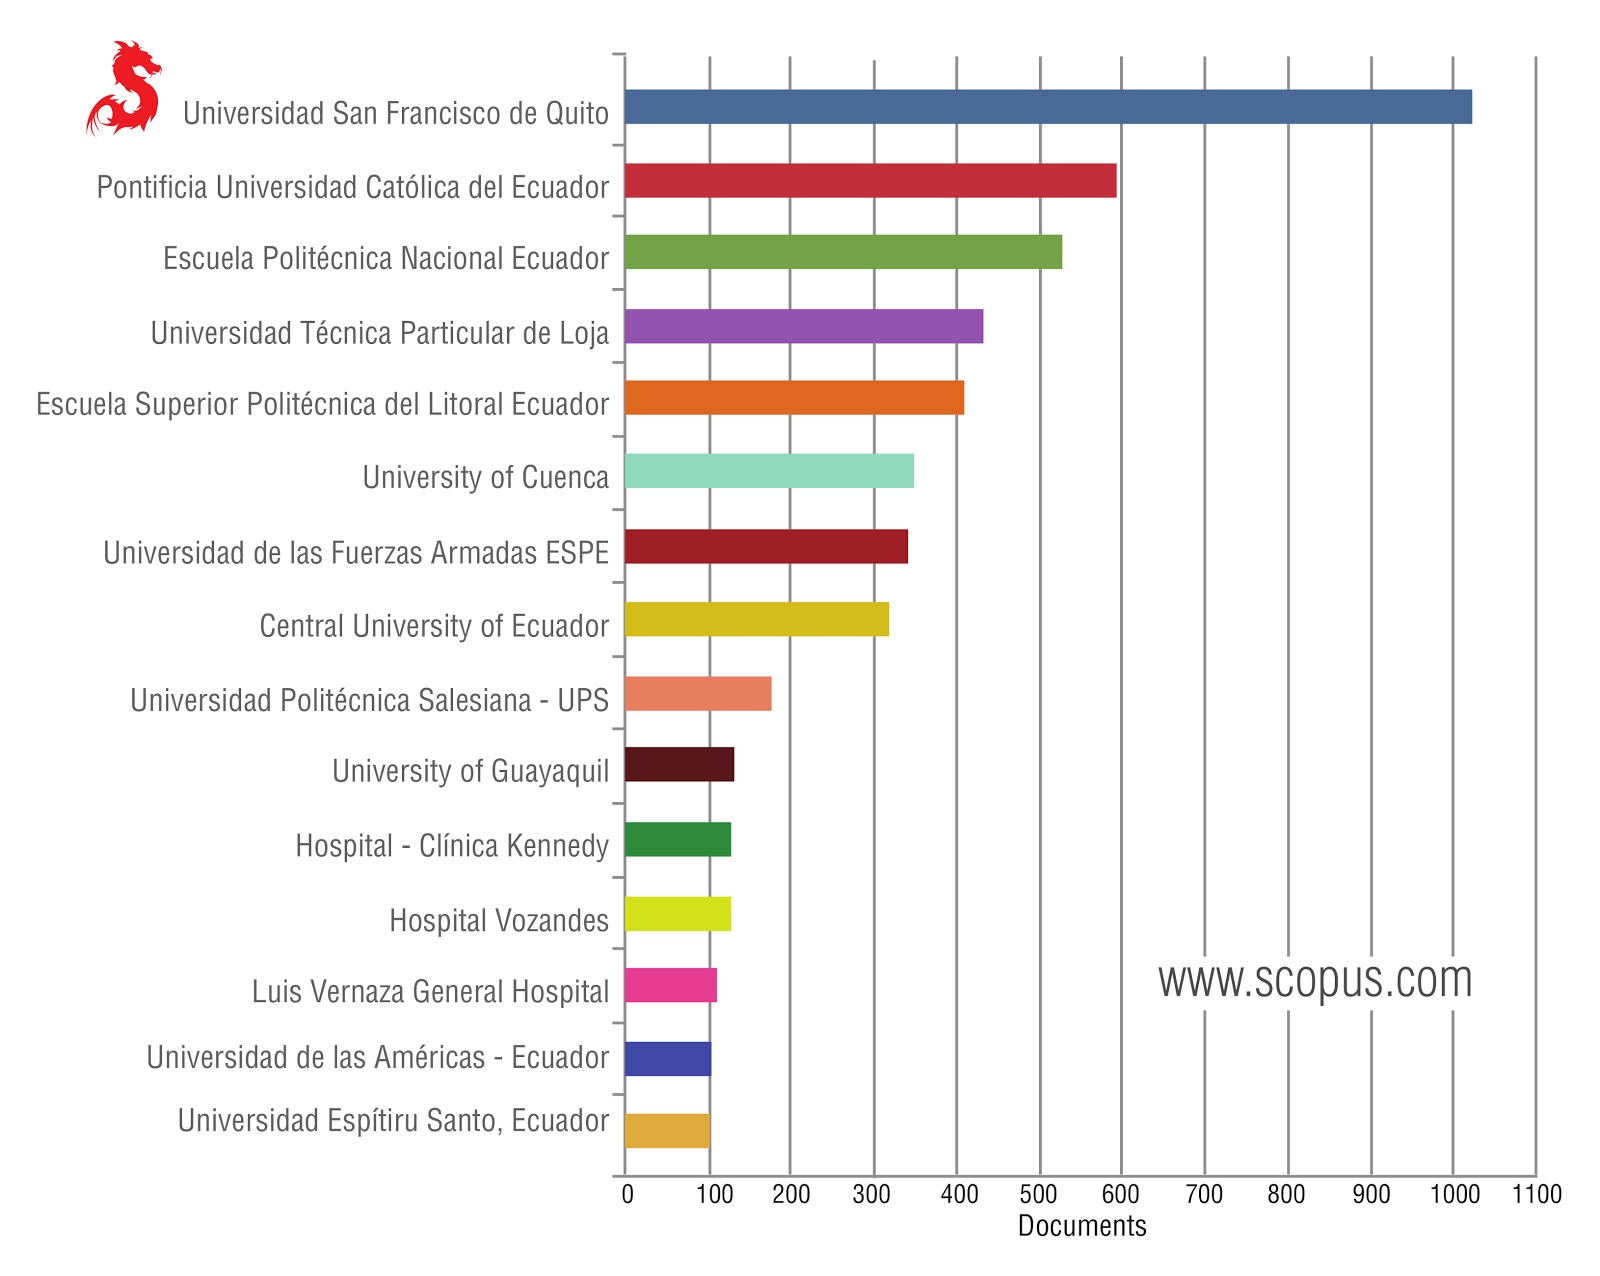 La USFQ sobrepasa las 1000 publicaciones en Scopus, una de las más importantes bases de datos bibliográficas.